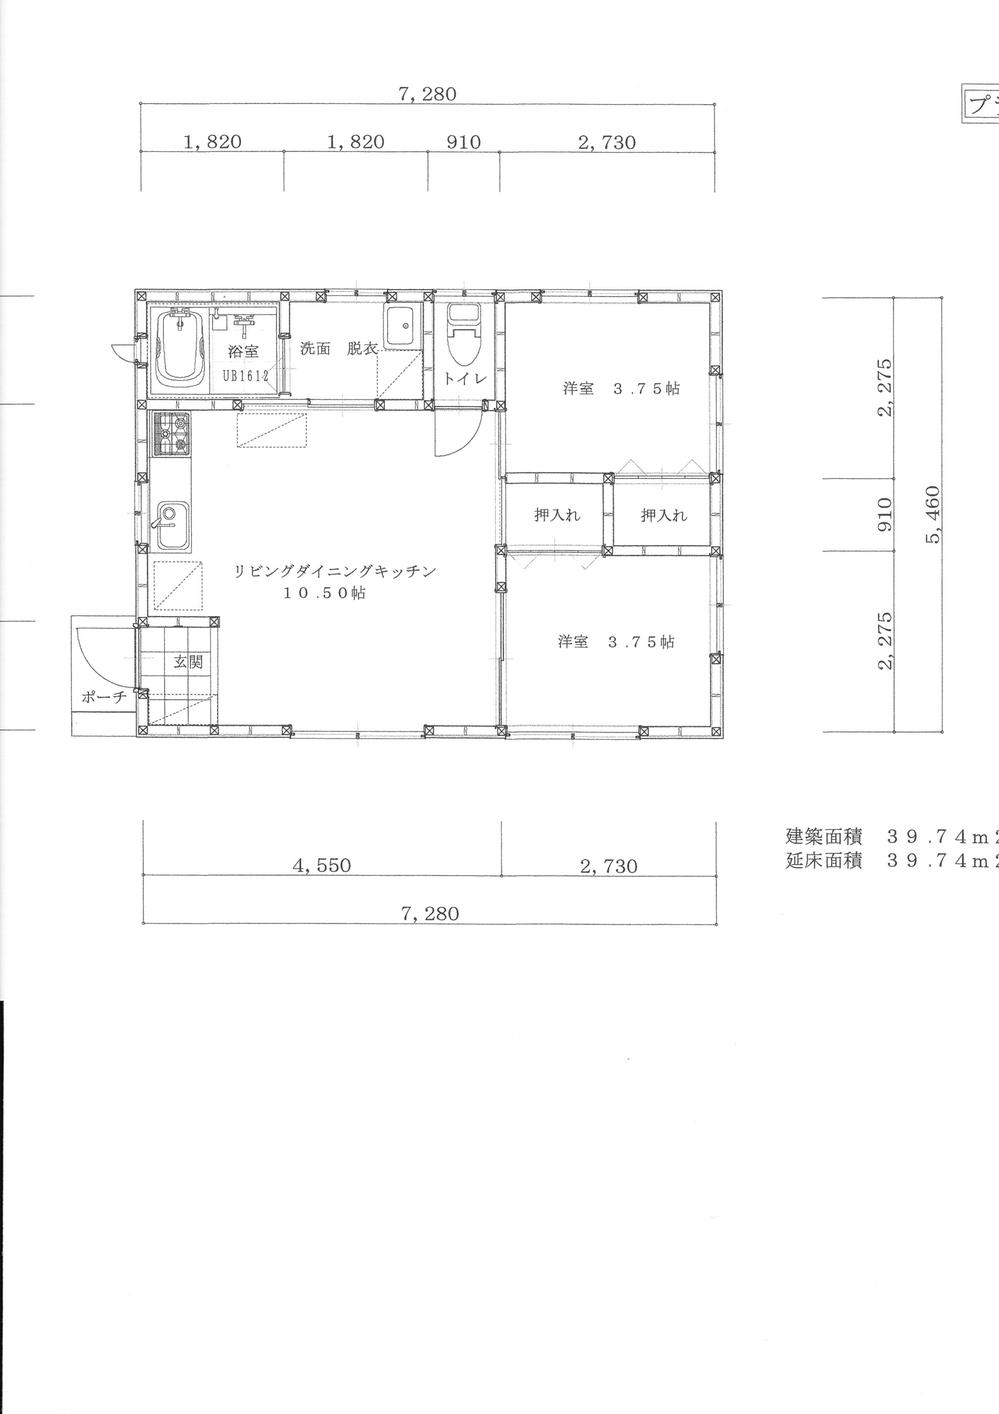 Floor plan. 9.9 million yen, 2LDK, Land area 828.11 sq m , Building area 39.74 sq m